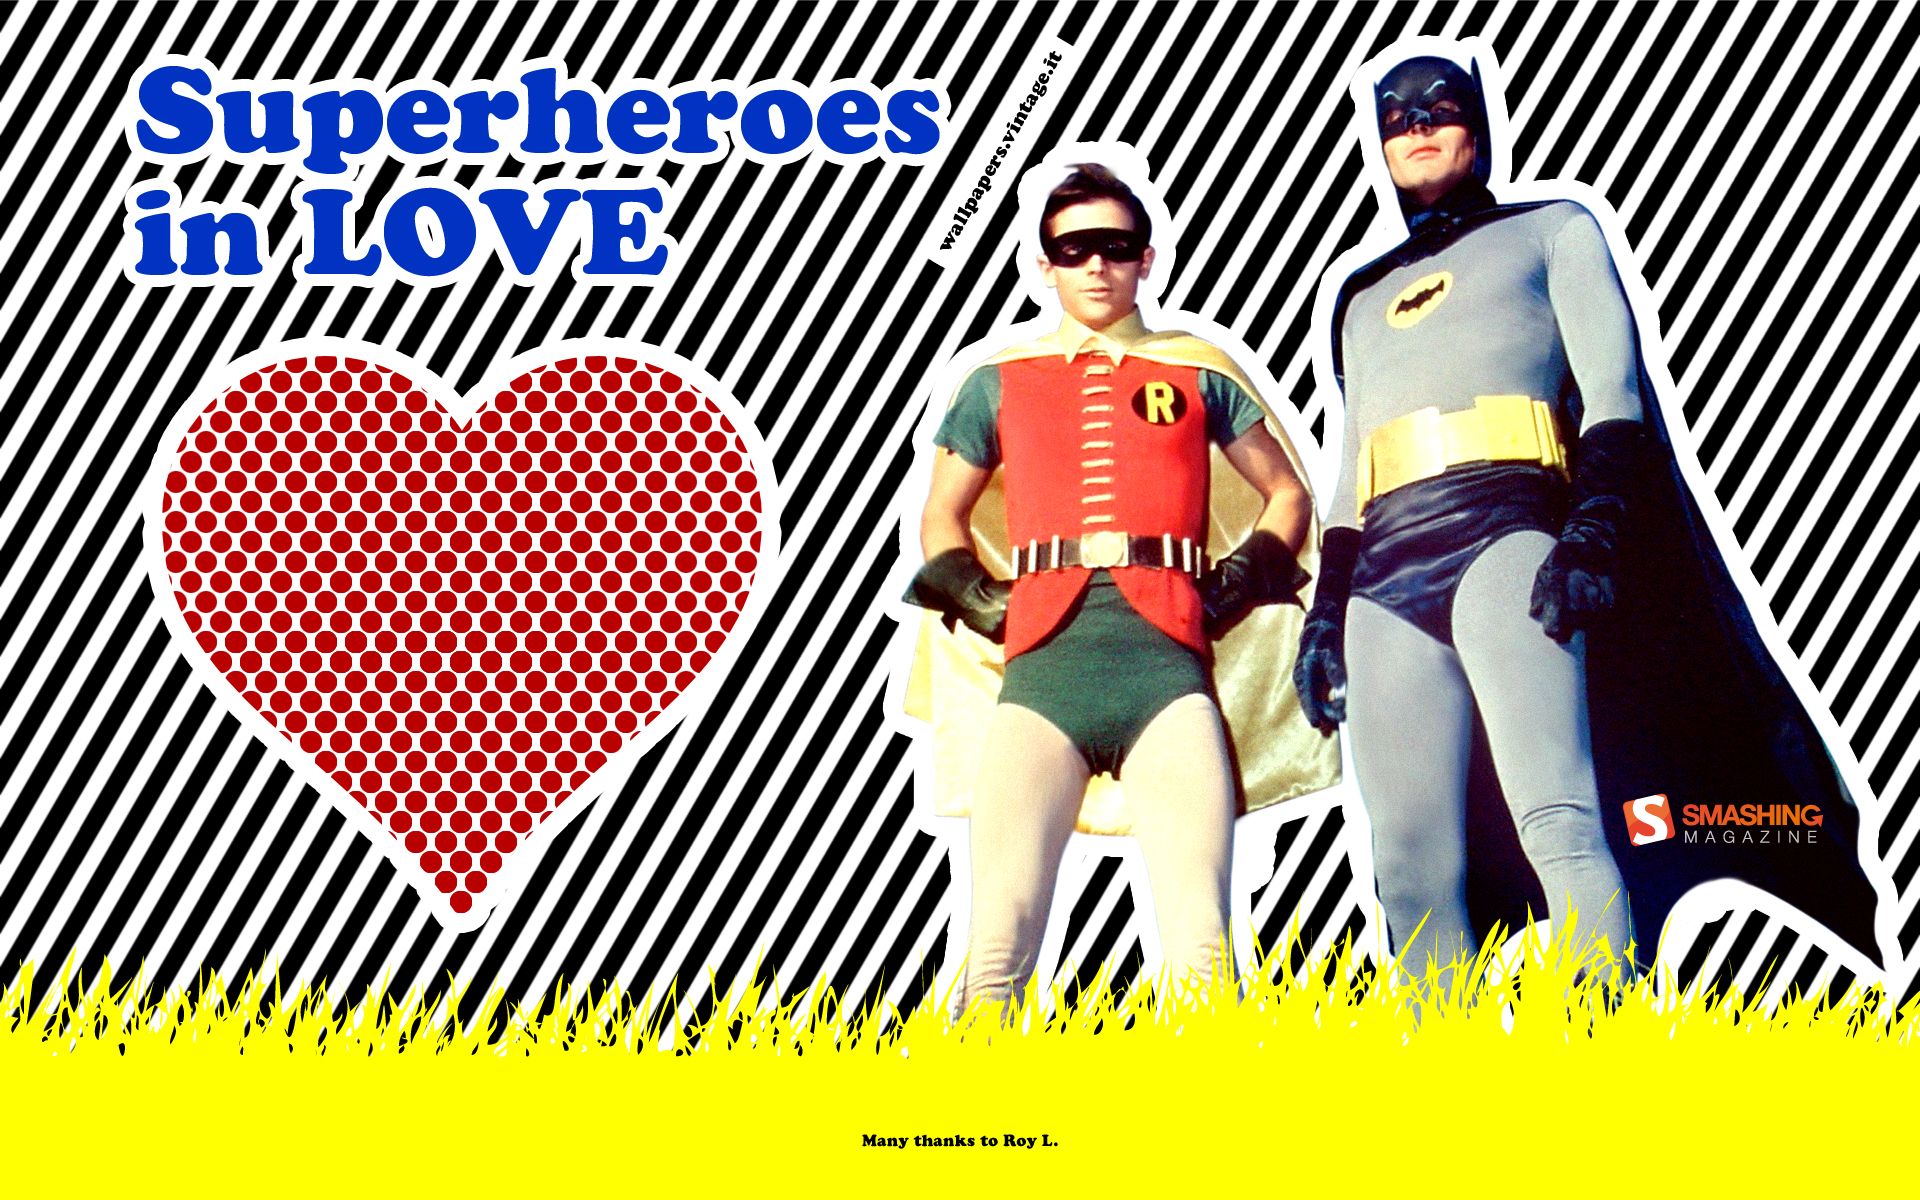 Superheroes in love - Batman & Robin wallpaper - Free Desktop HD ...